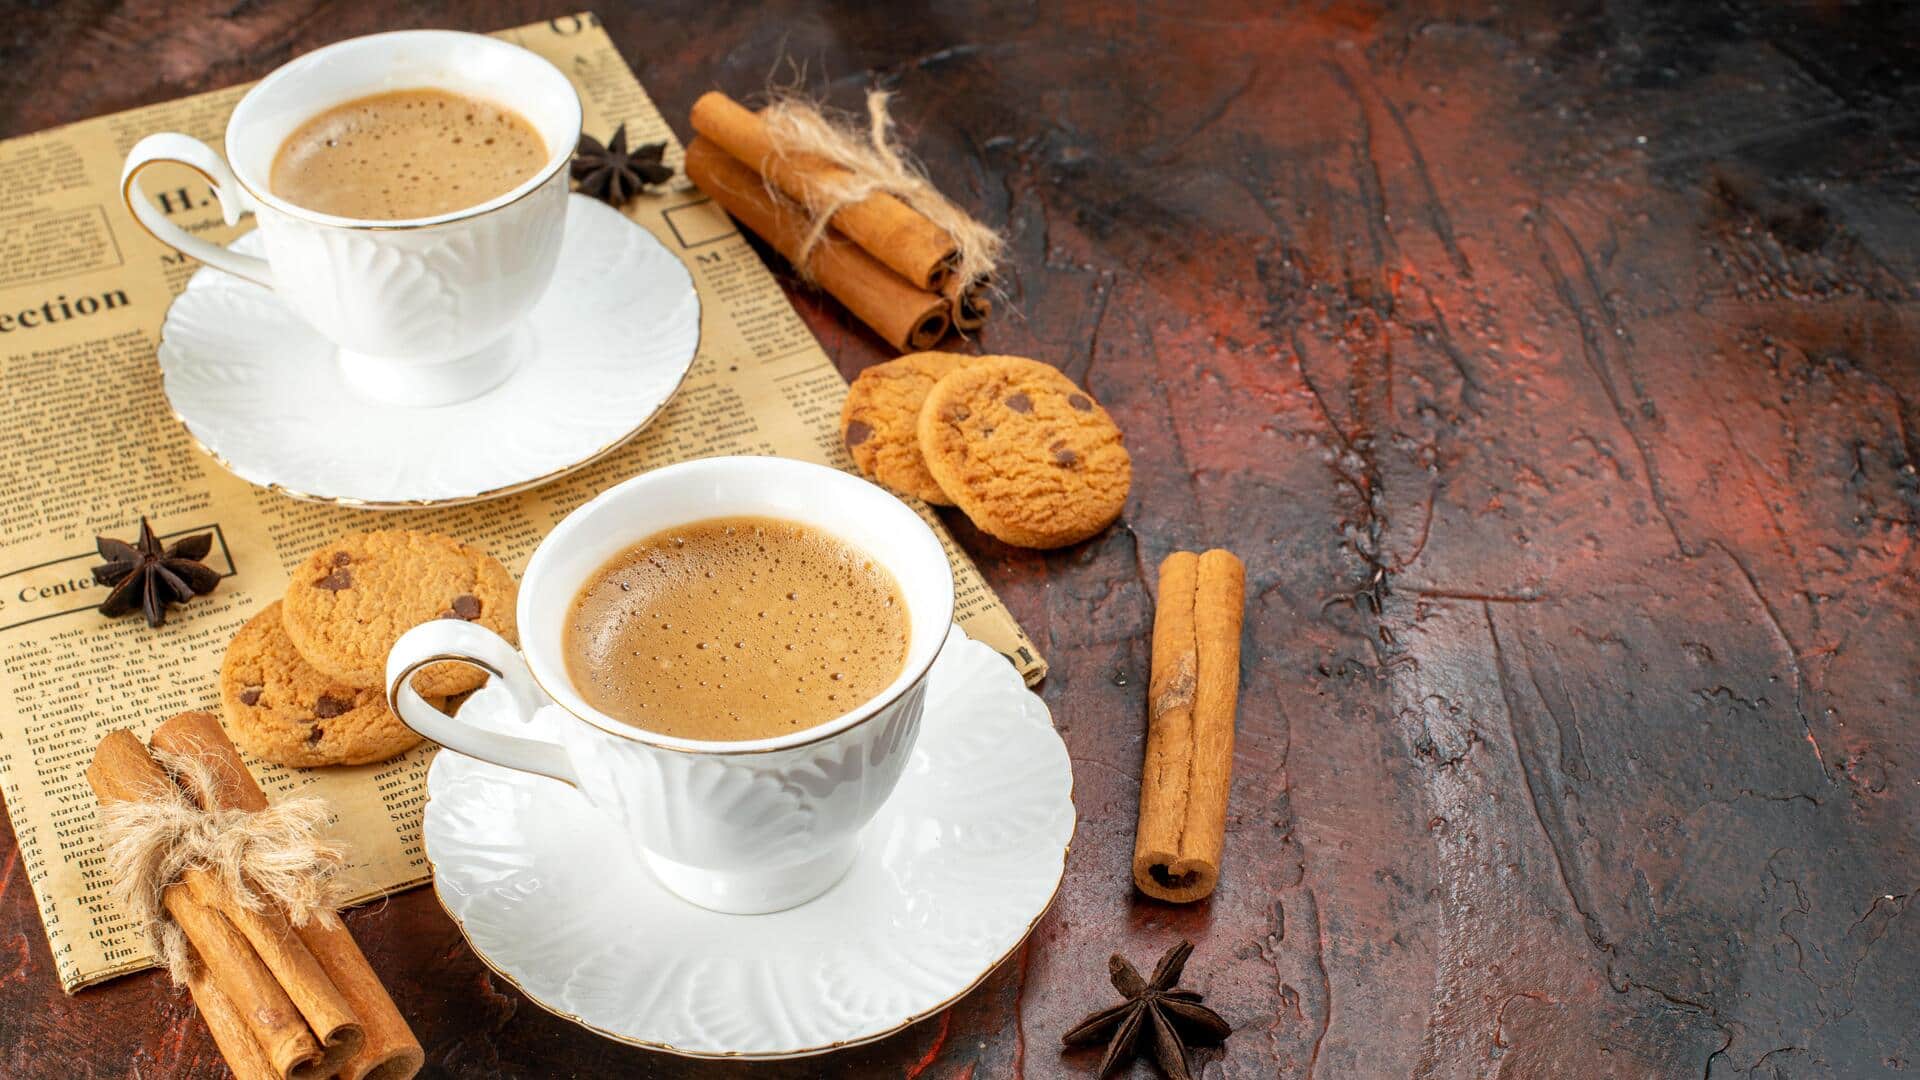 भारतीयों के साथ चाय का अनोखा रिश्ता, जानिए इसका इतिहास और अन्य महत्वपूर्ण बातें